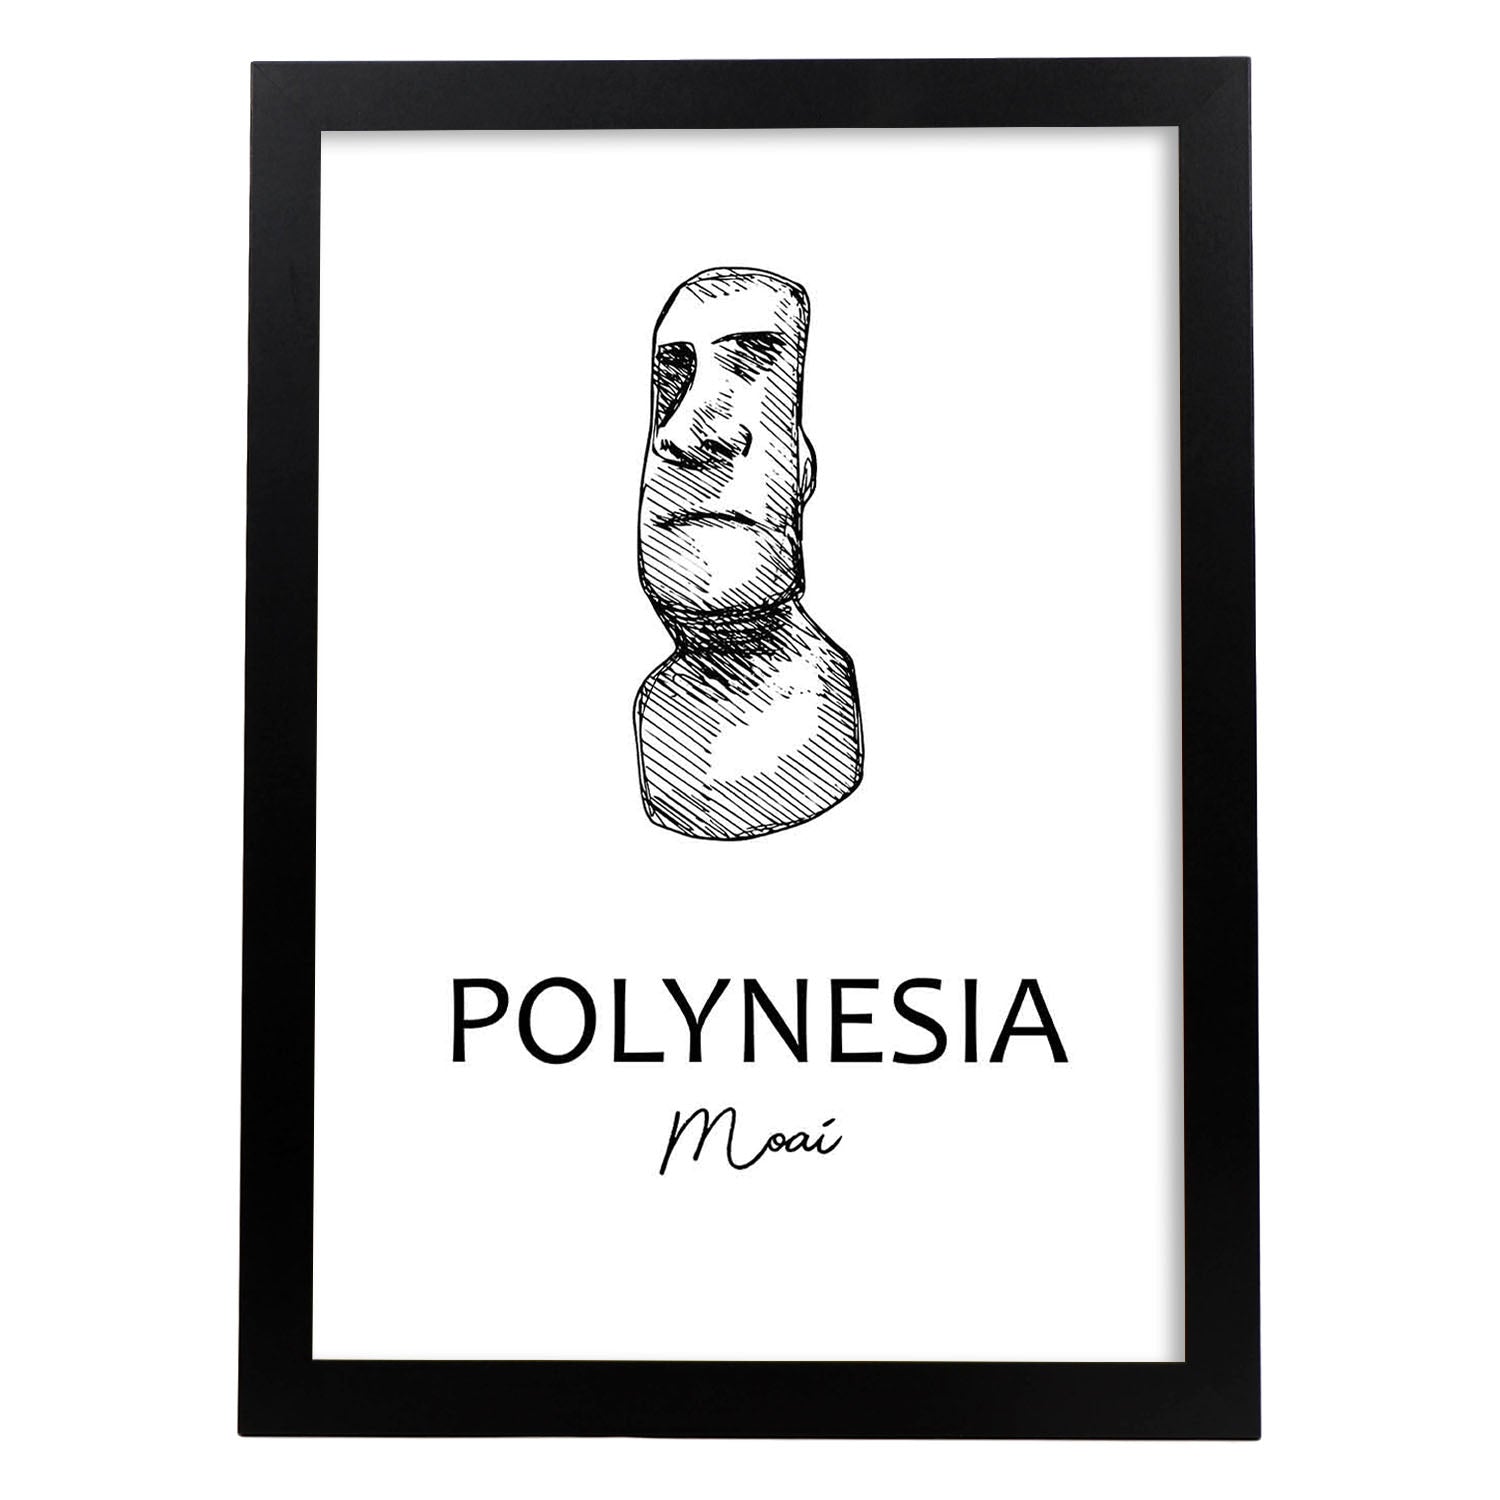 Poster de Polinesia - Moai. Láminas con monumentos de ciudades.-Artwork-Nacnic-A4-Marco Negro-Nacnic Estudio SL